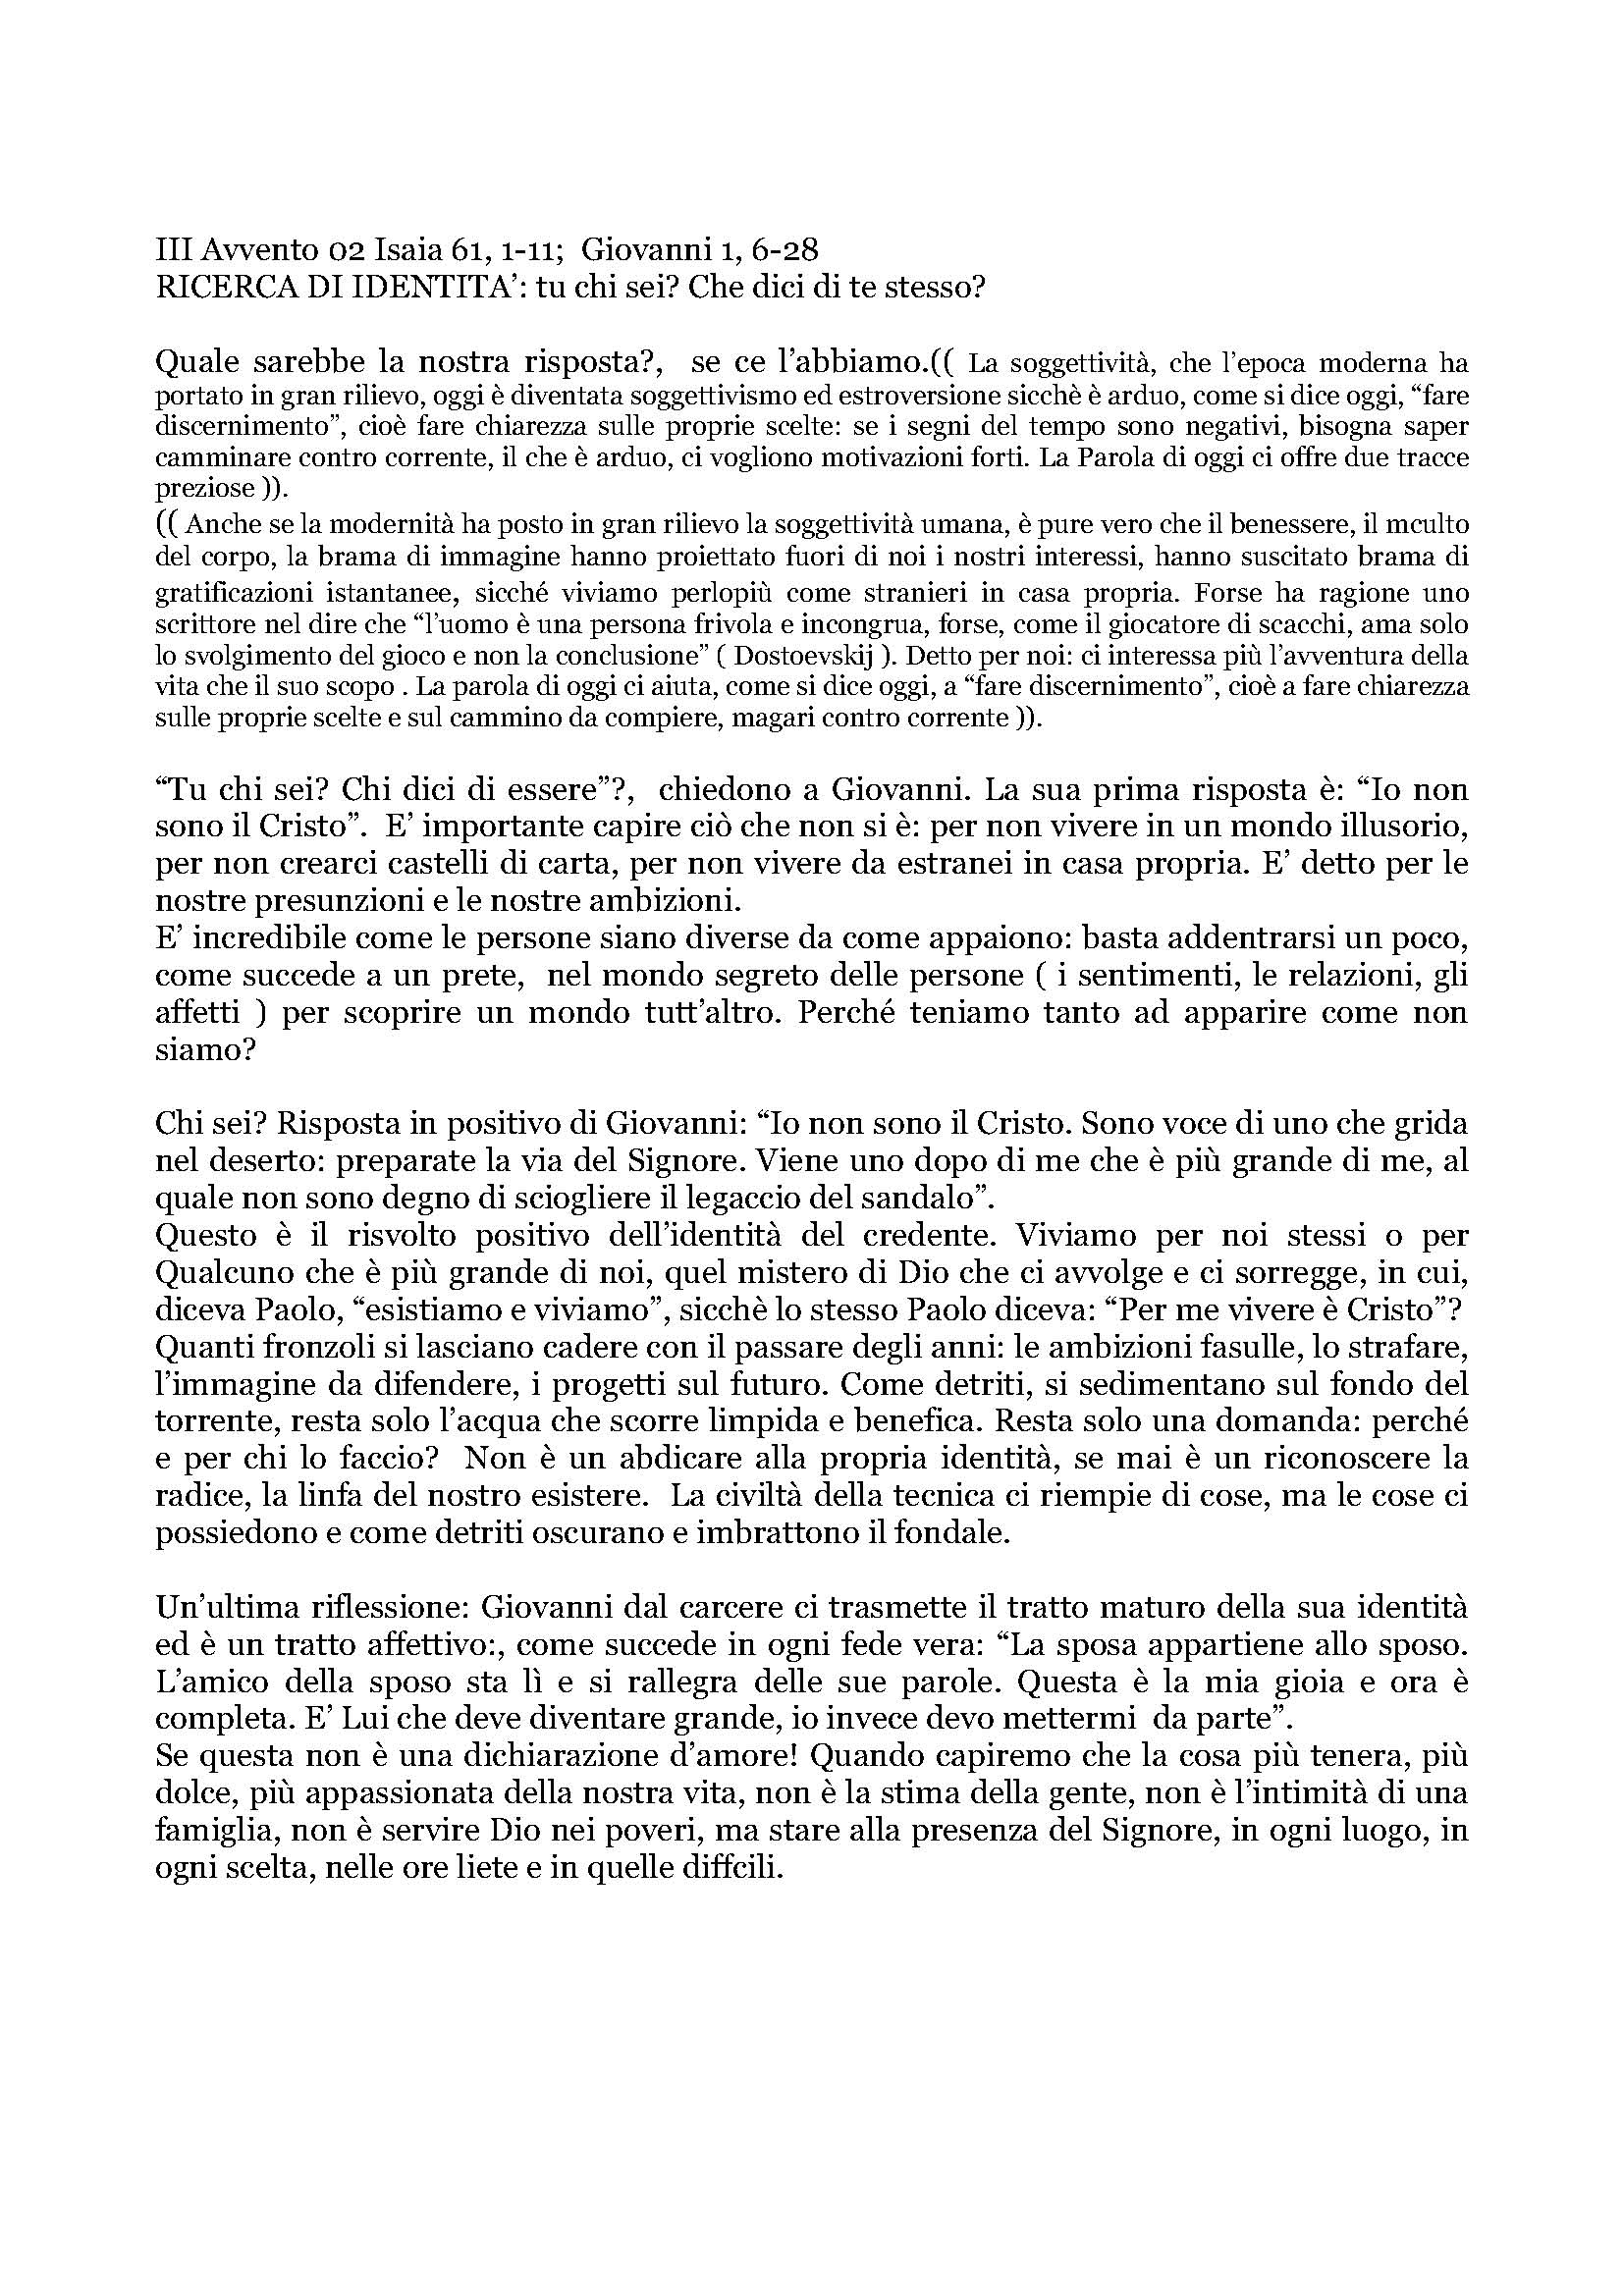 Avvento02_RICERCA_DI_IDENTITA.pdf